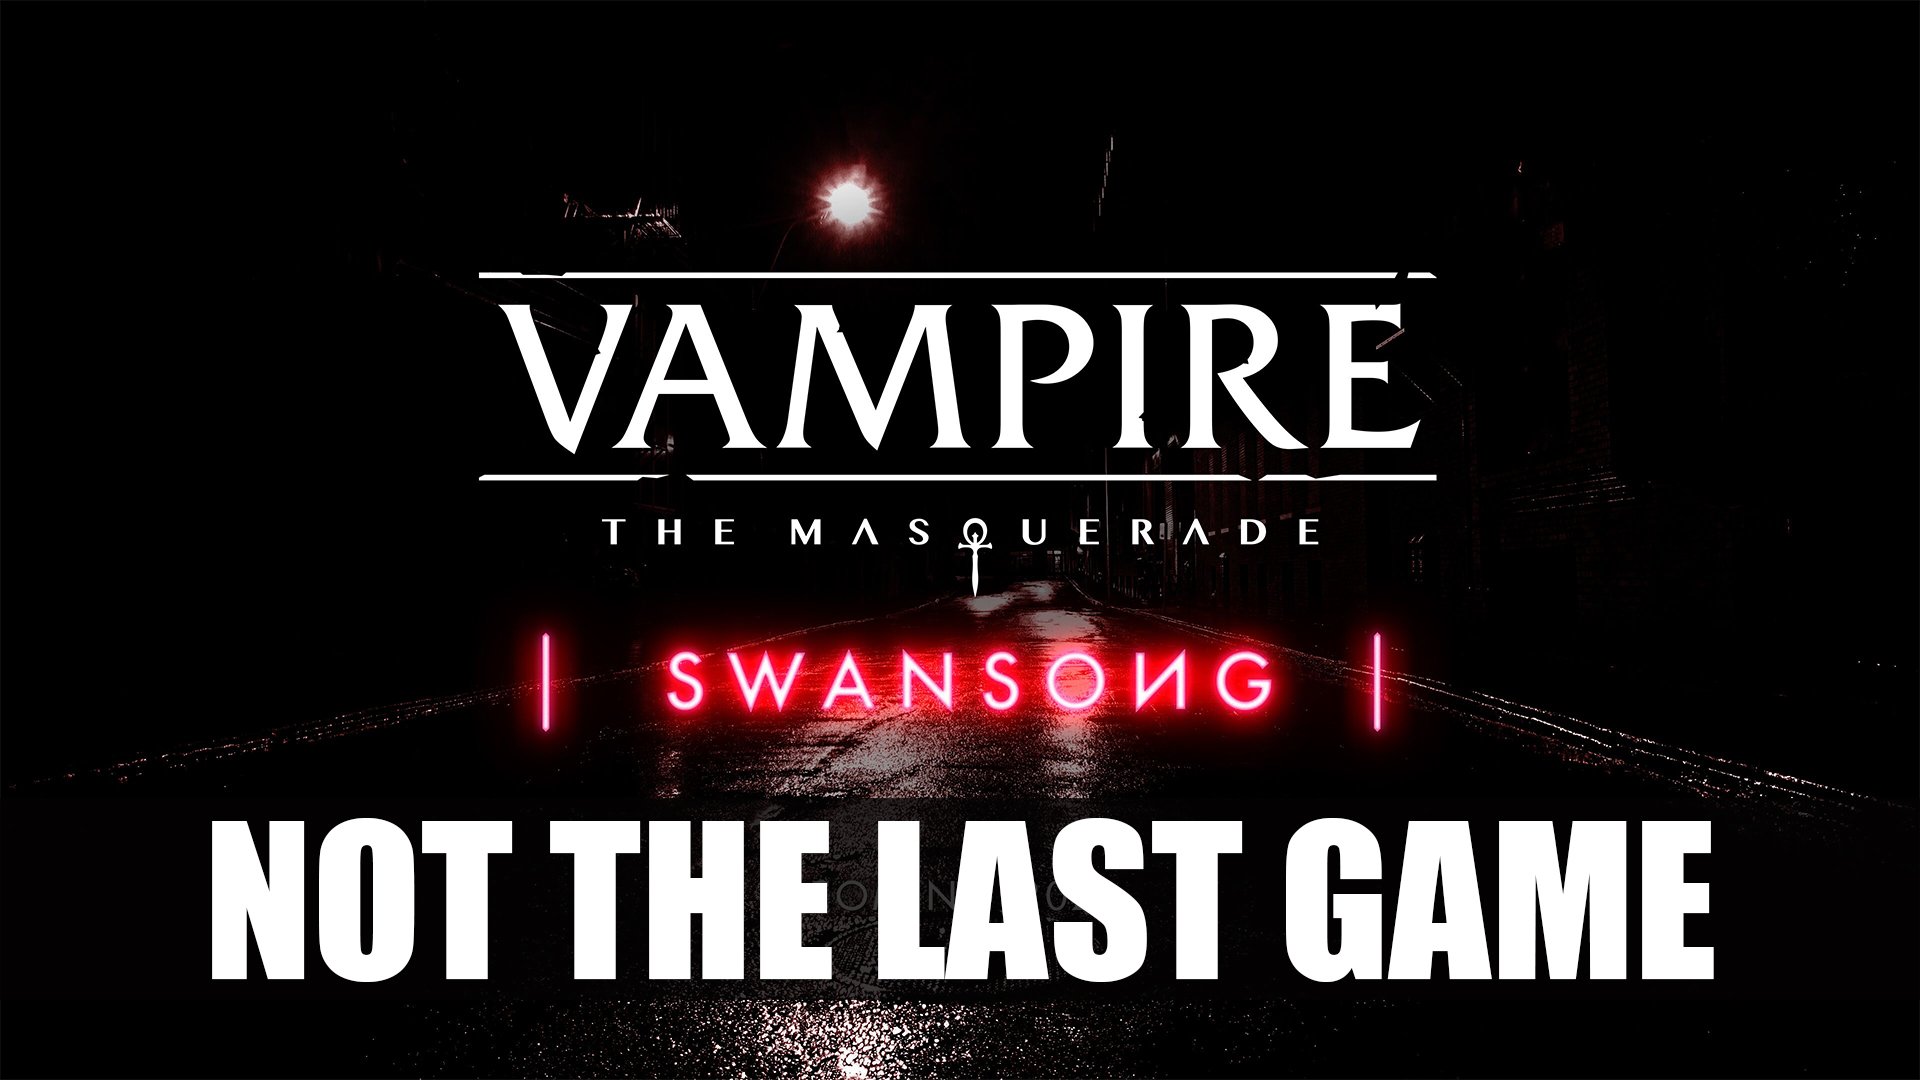 Vampire: The Masquerade - Swansong on X: We've got 3 Vampire: The